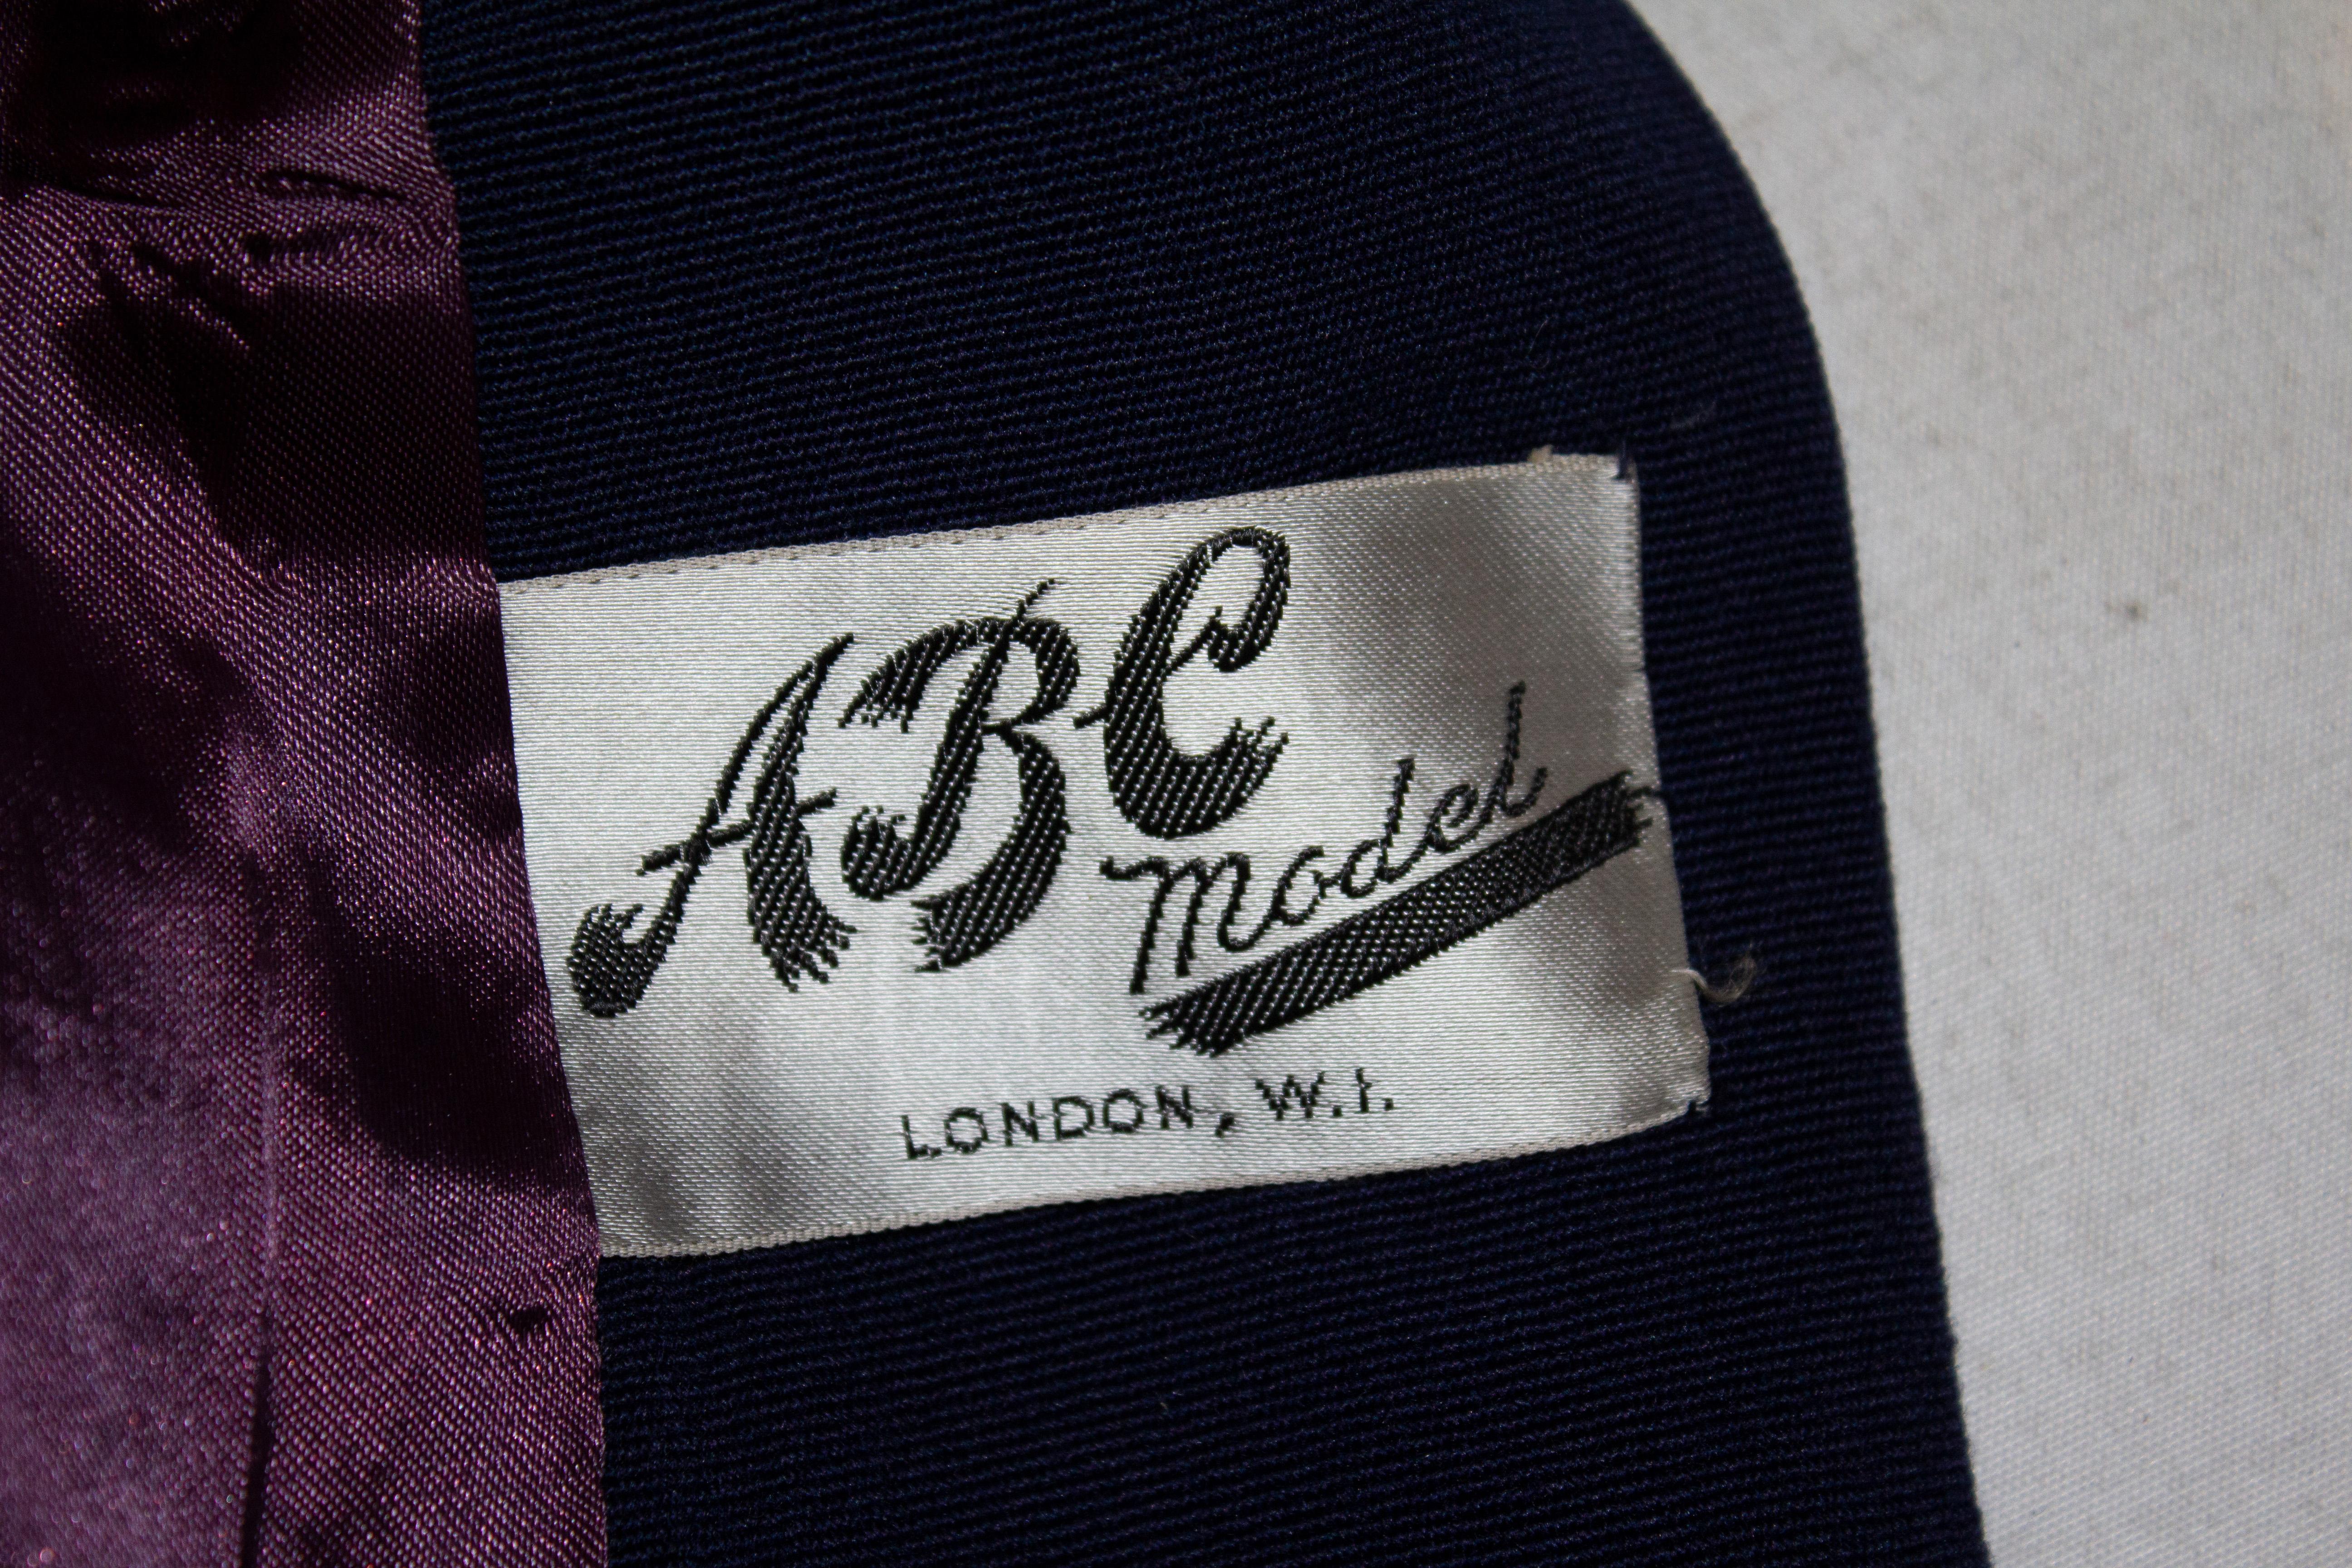 Eine schicke Vintage-Jacke von ABC Model London W1. Die Jacke ist in einem schönen Blauton gehalten und hat einen schönen Kragen und eine Knopfleiste. Sie ist vollständig gefüttert und hat zwei dezente Seitentaschen.
Maße: Büste bis zu 39'', Länge